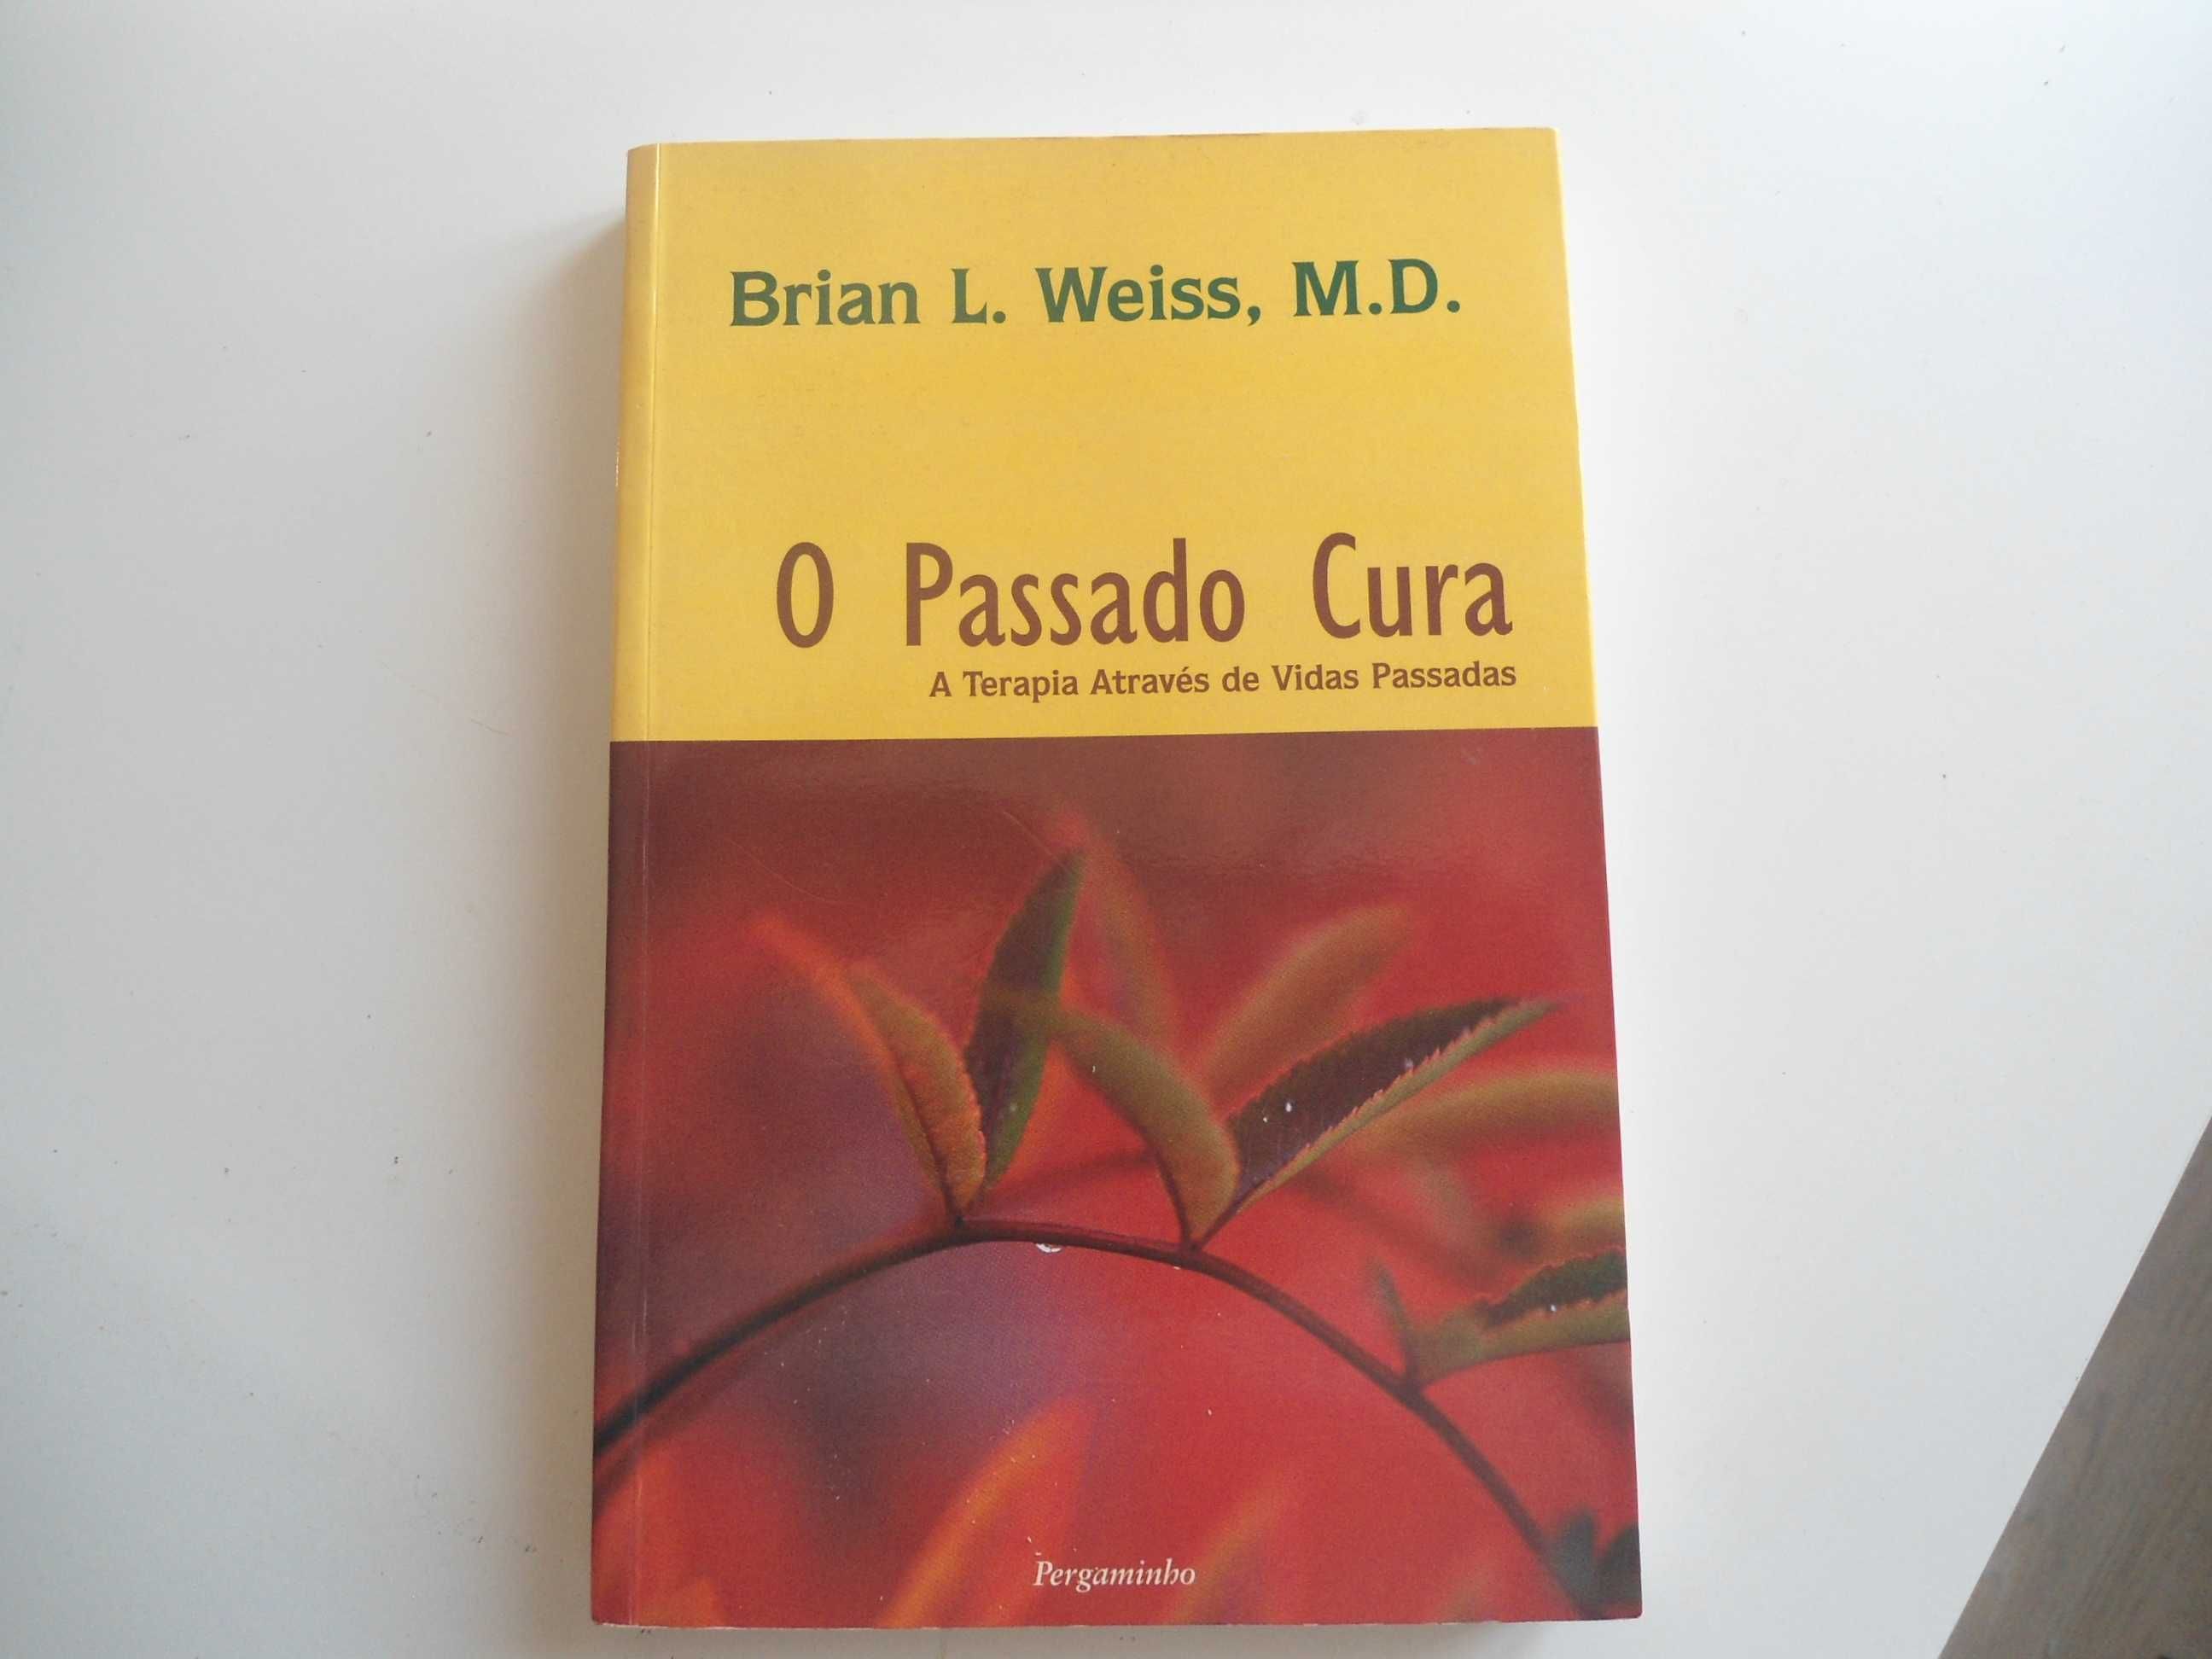 O Passado Cura - A Terapia através de vidas Passadas-Brian L. Weiss